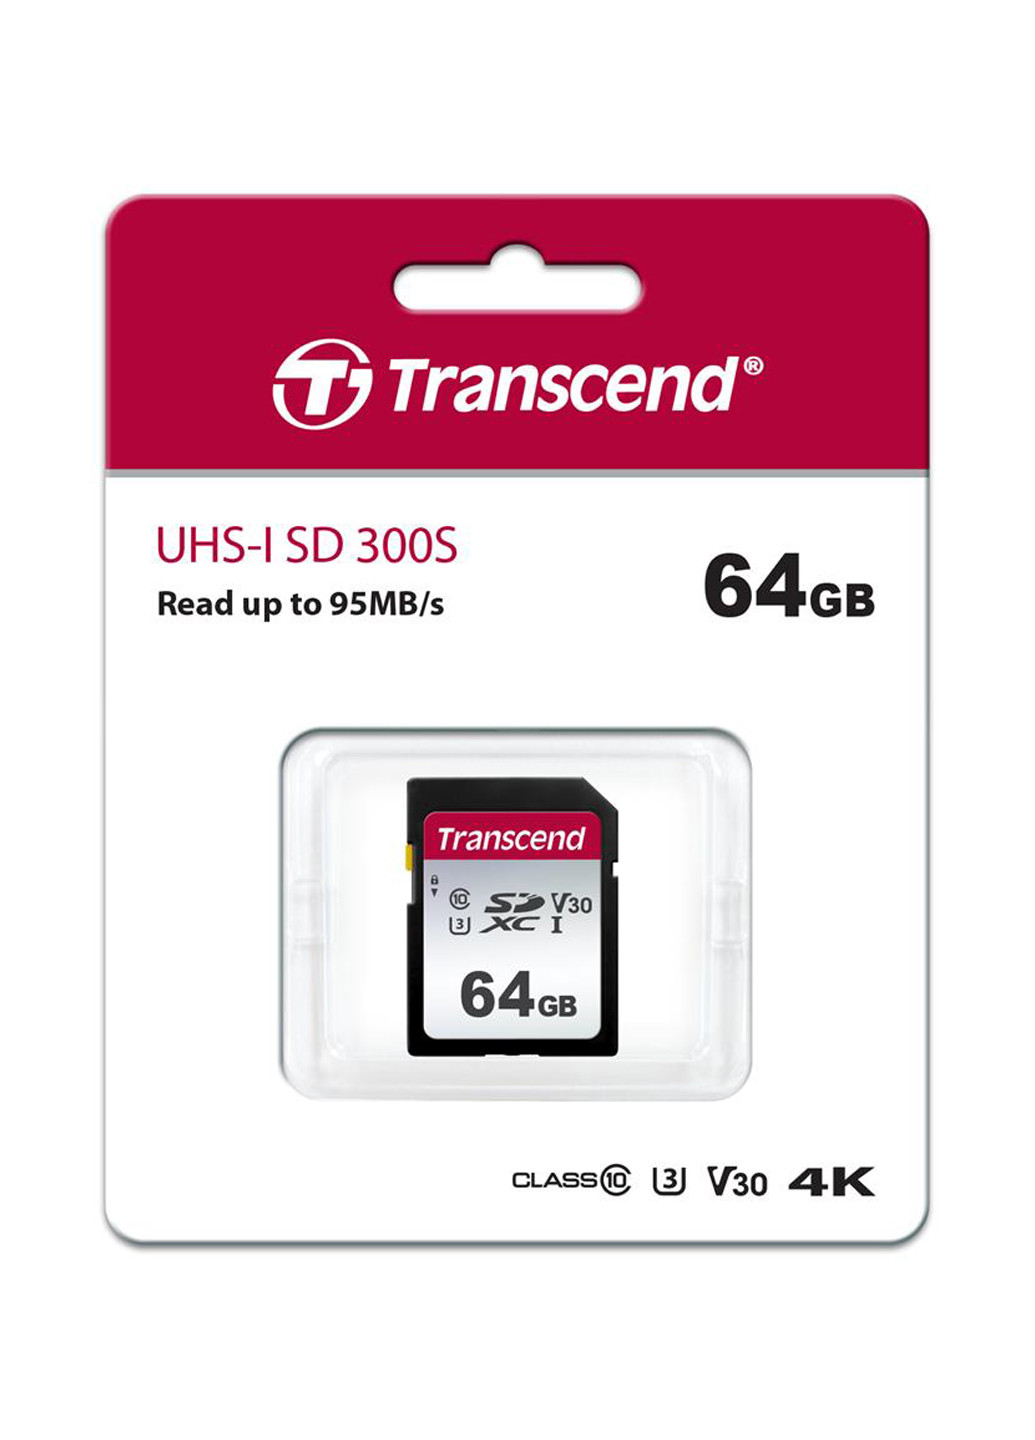 Карта памяти SDXC 64GB C10 UHS-I (R95/W45MB/s) (TS64GSDC300S) Transcend карта памяти transcend sdxc 64gb c10 uhs-i (r95/w45mb/s) (ts64gsdc300s) (130843104)